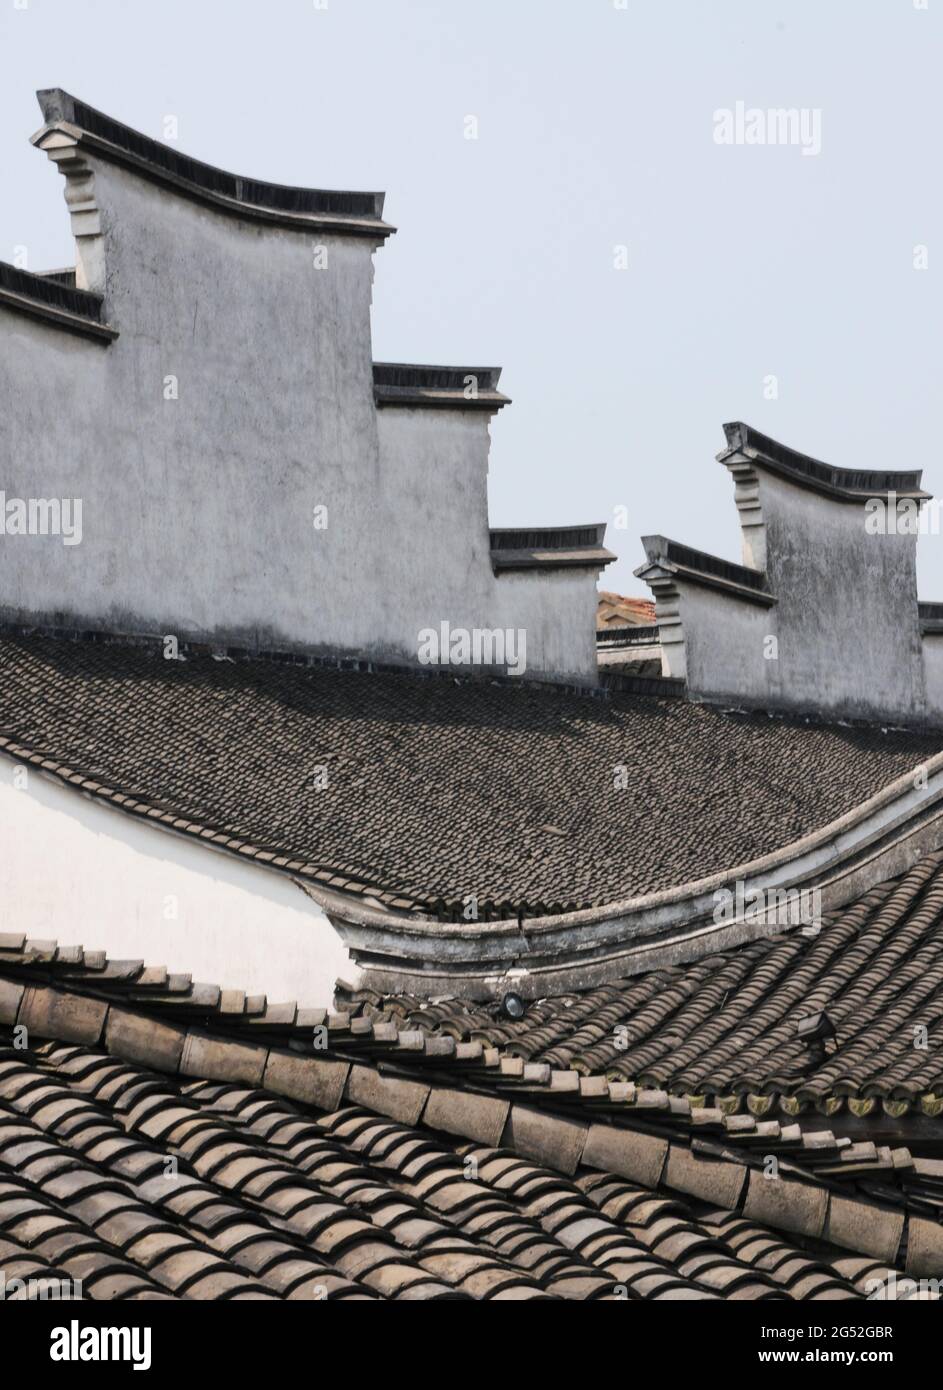 Dach des traditionellen chinesischen Gebäudes in Wuzhen, einem Wasserdorf in China Stockfoto